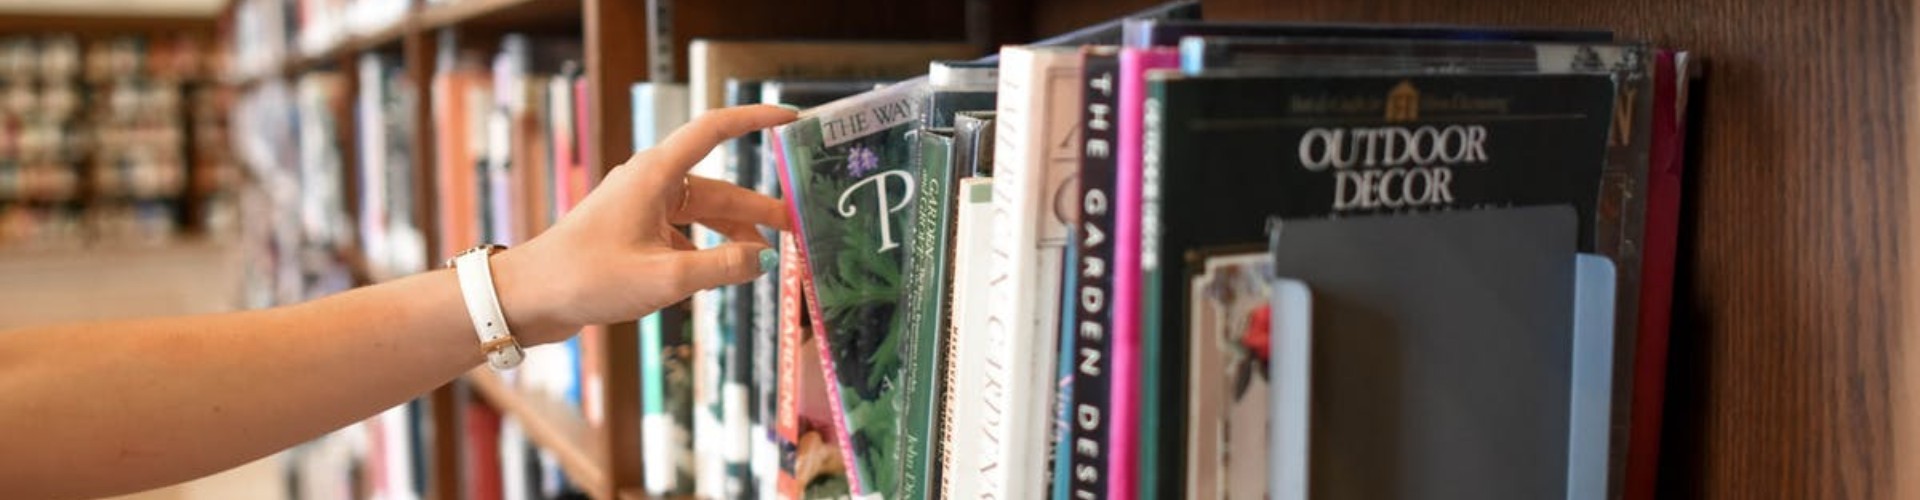 Praca w bibliotece - ile zarabia bibliotekarz? Gdzie szukać pracy?